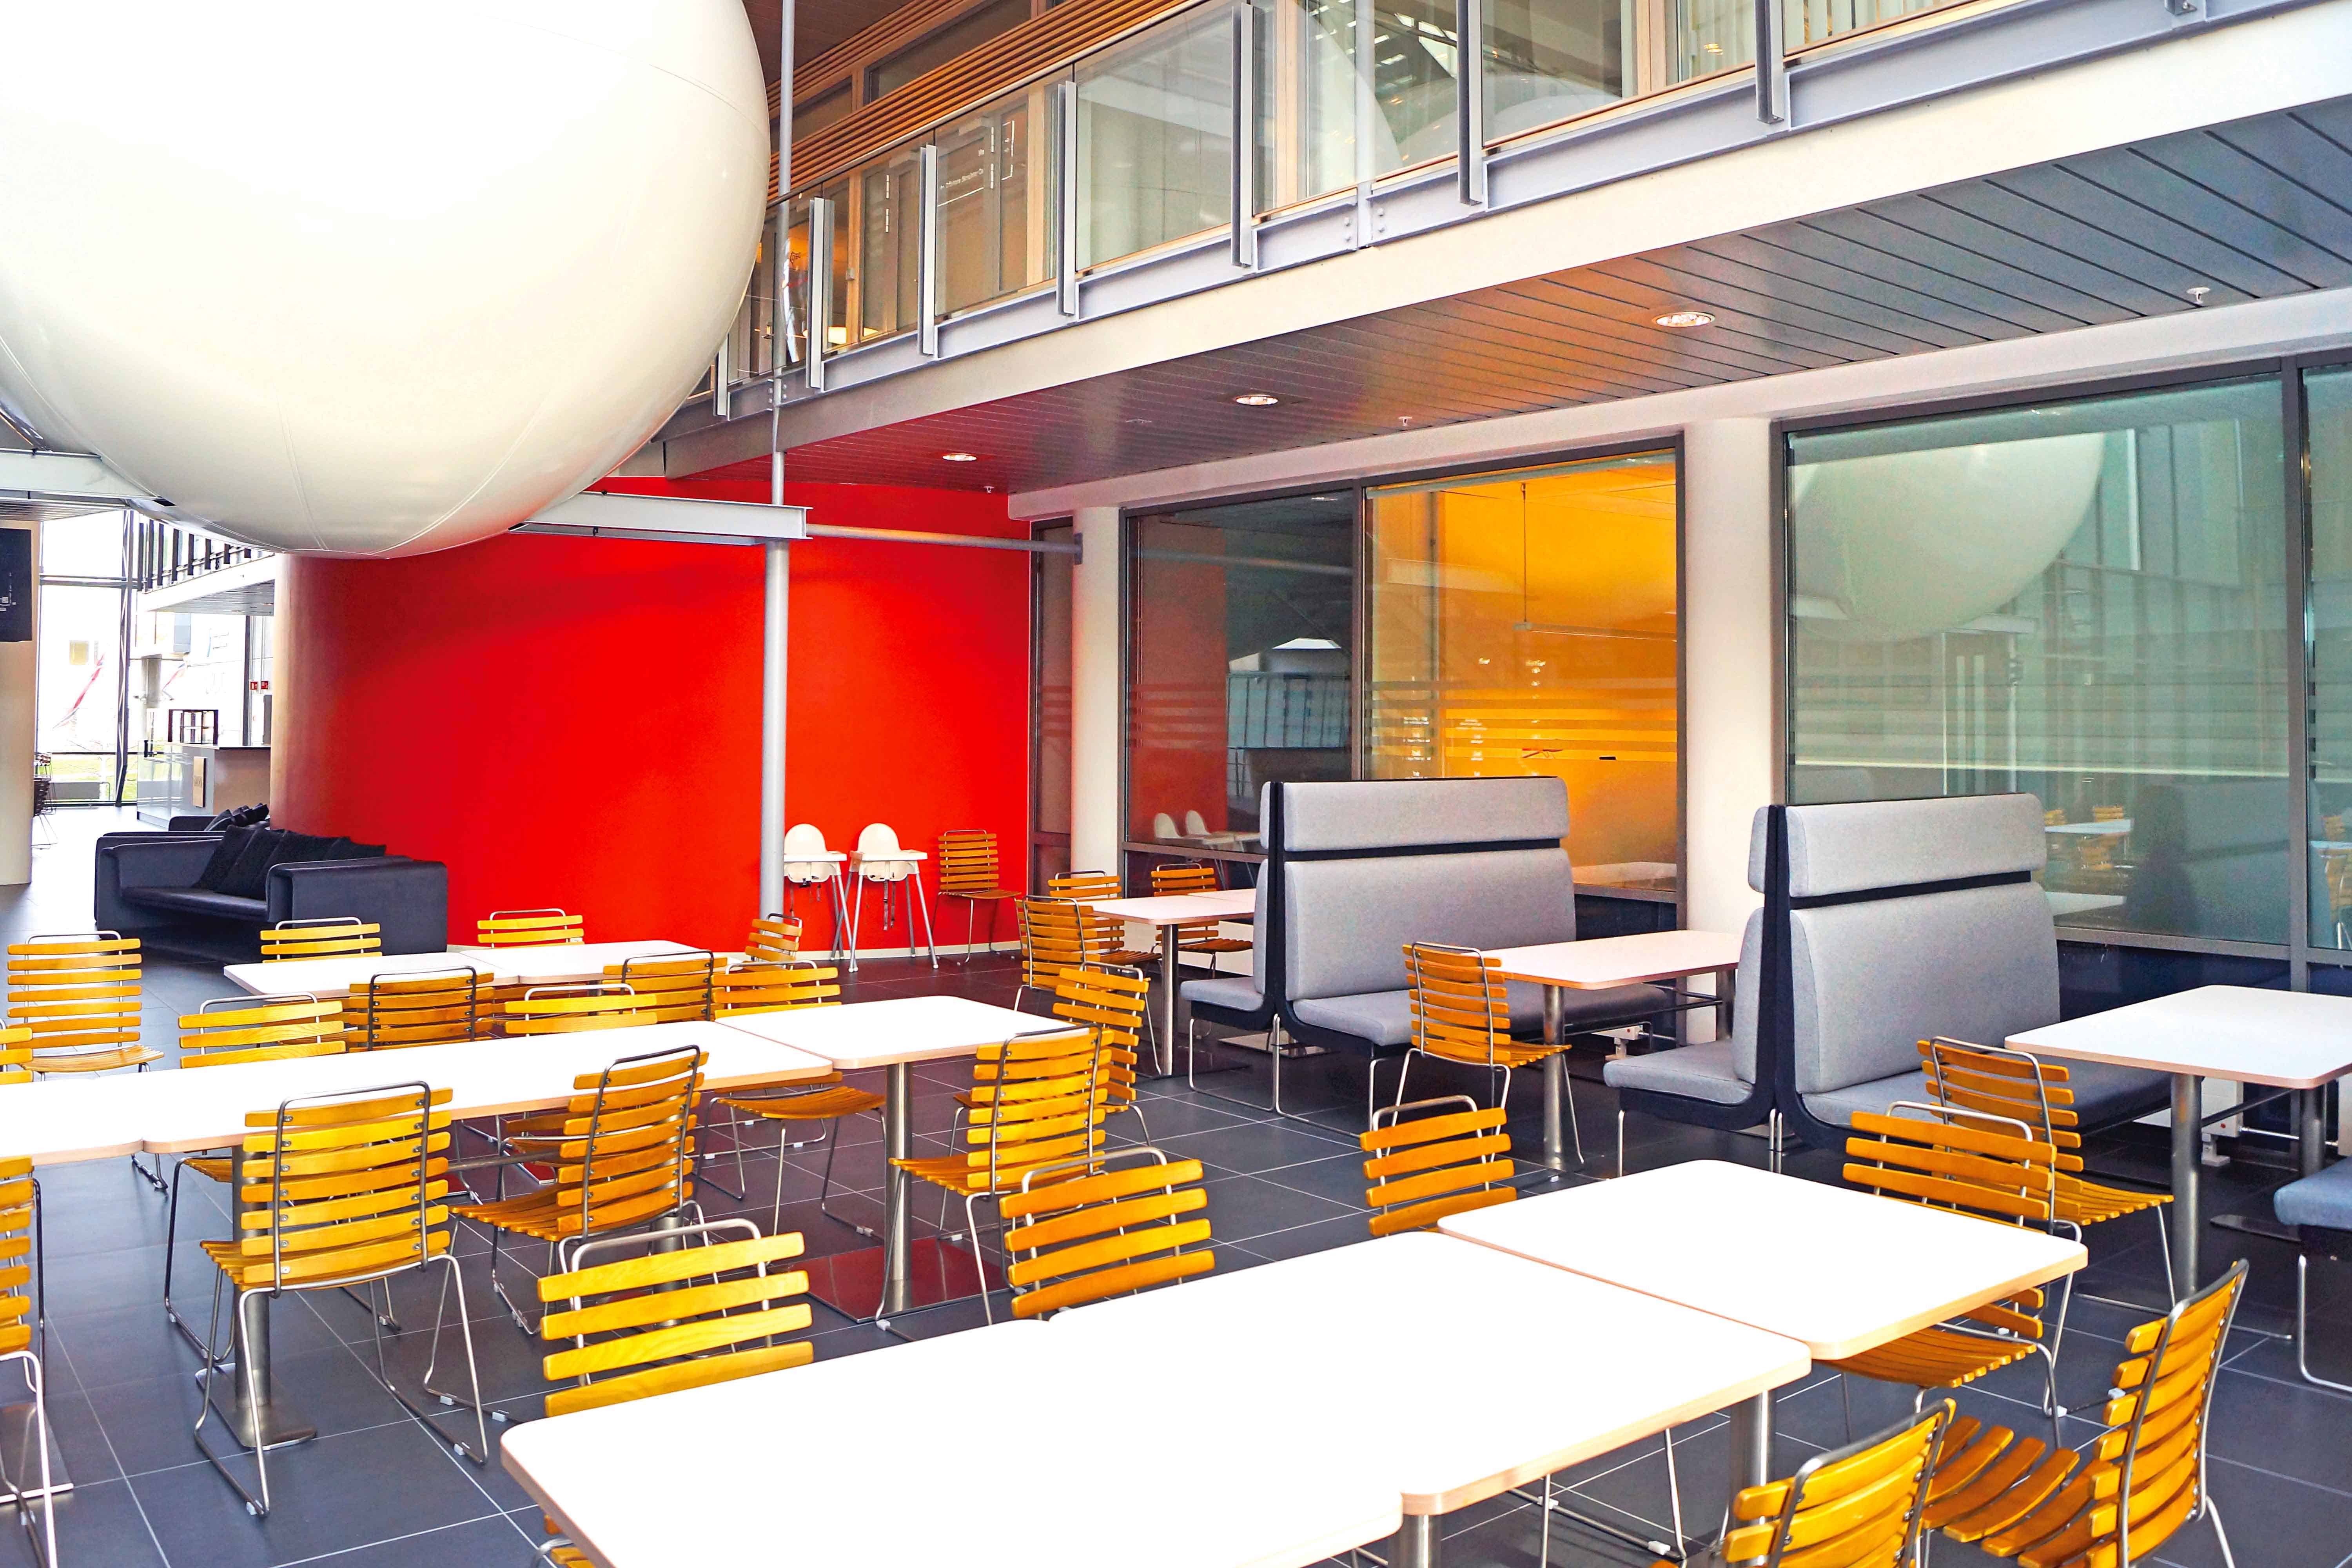 Άποψη του εστιατορίου του Norwegian Maritime Competence Centre, όπου γευματίζουν από κοινού, τόσο οι σπουδαστές της Ακαδημίας όσο και τα στελέχη των επιχειρήσεων που εδρεύουν στο κτίριο